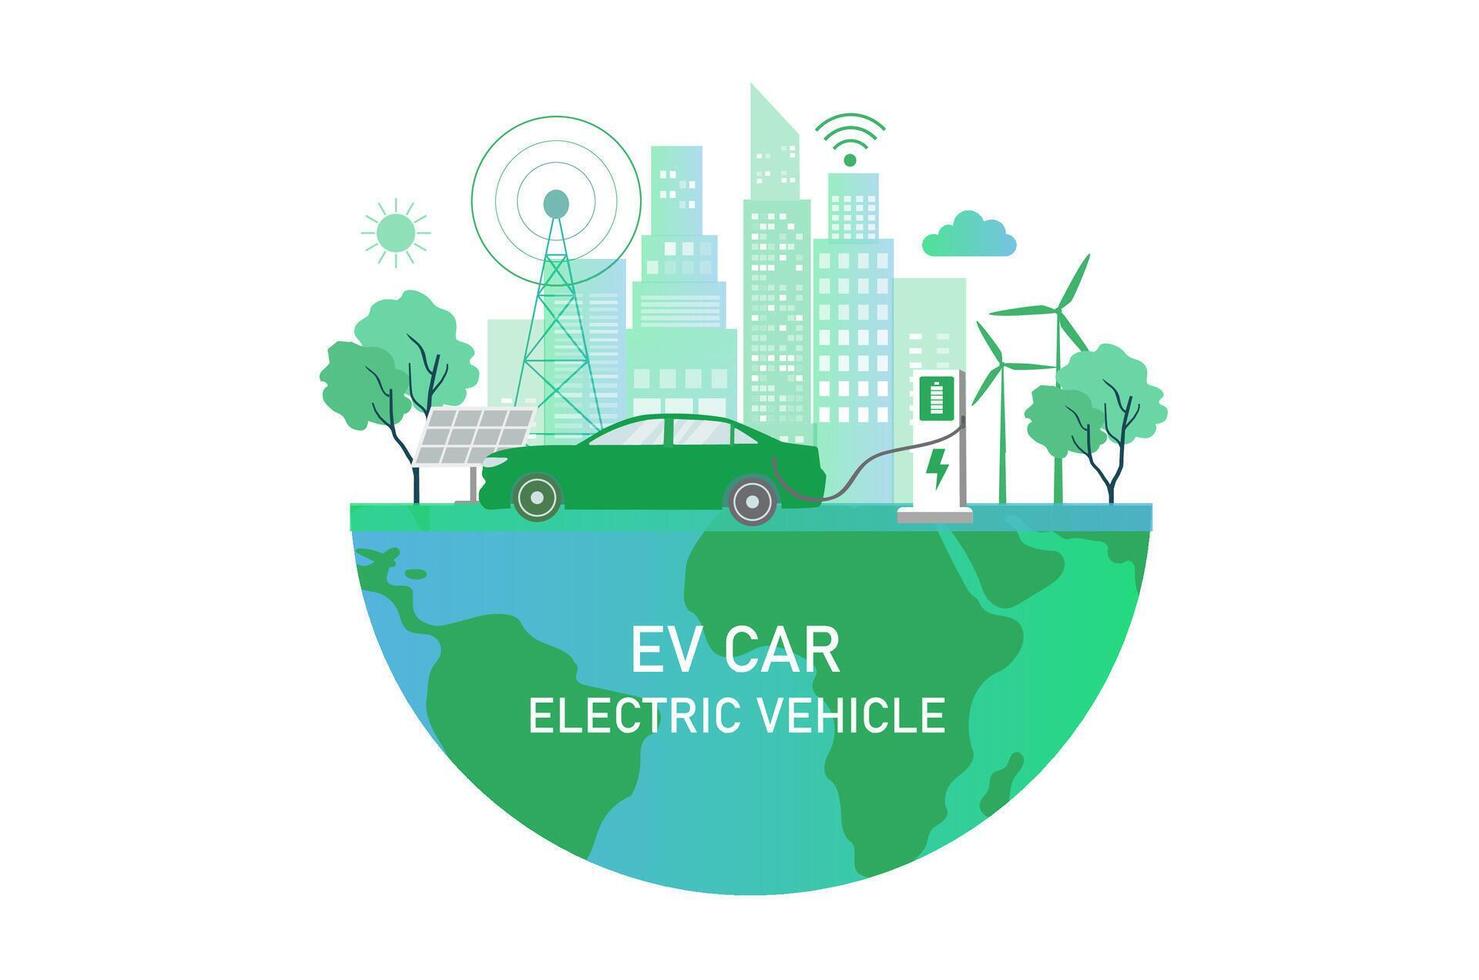 elektroauto, ev-auto, autoladebatterie an elektrischer ladestation mit sonnenkollektor und windturbinen. nachhaltige grüne energie für die ökologie umwelt. futuristische Transporttechnologie. vektor